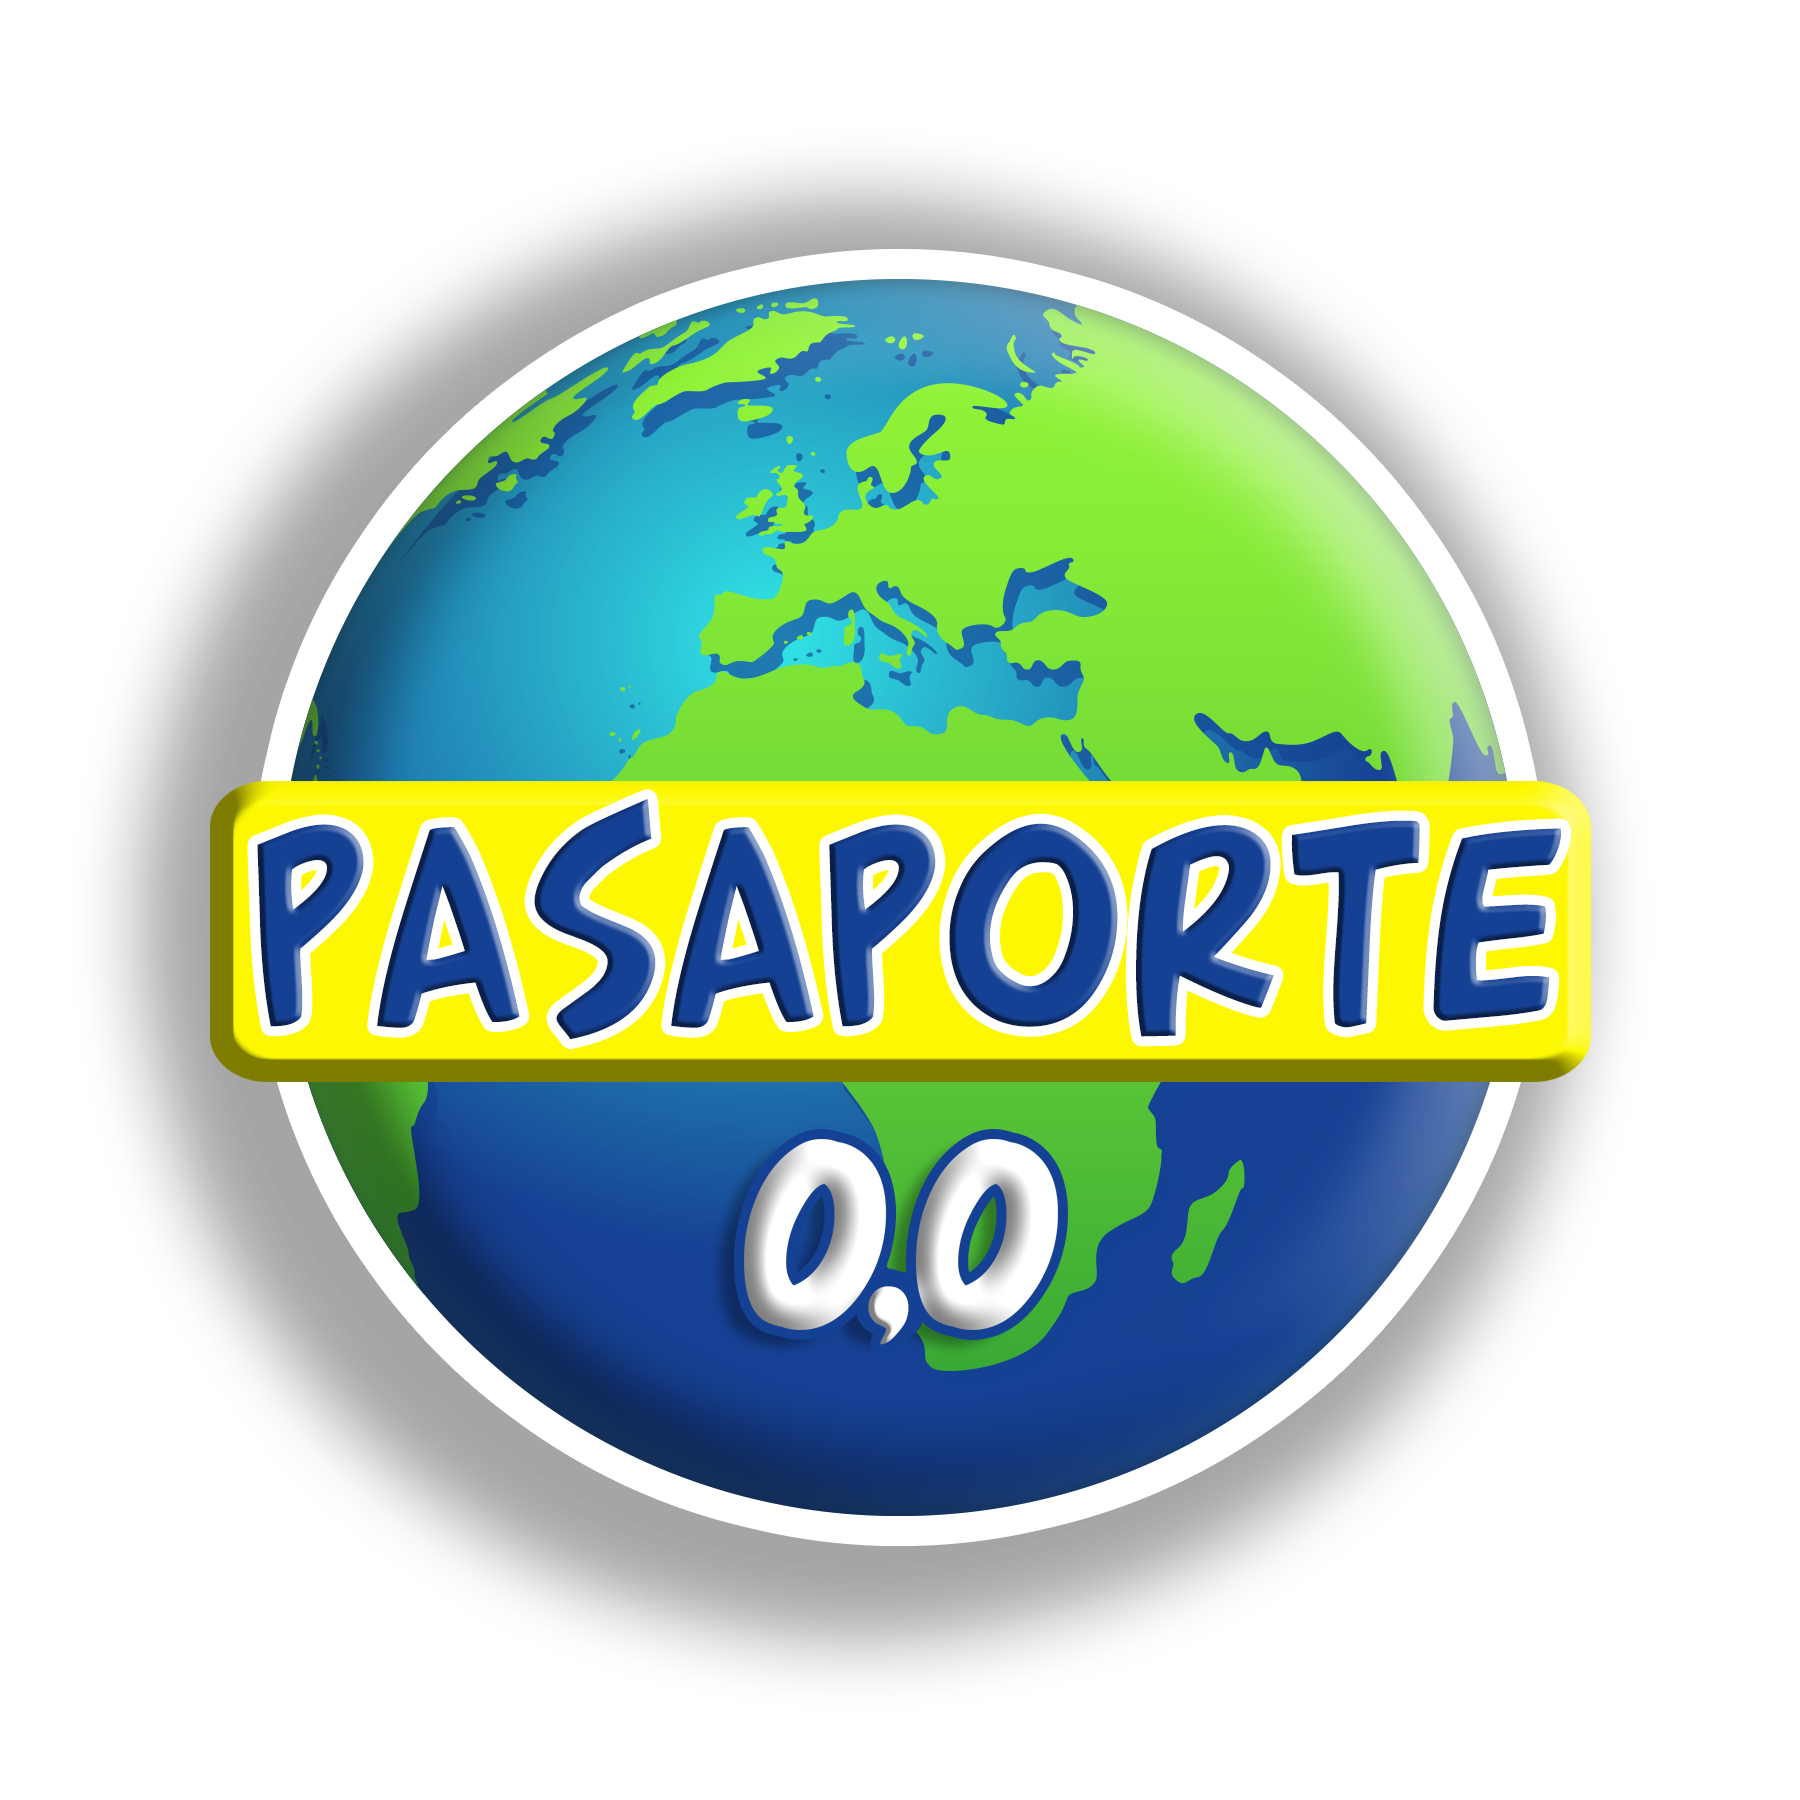 Pasaporte 0,0